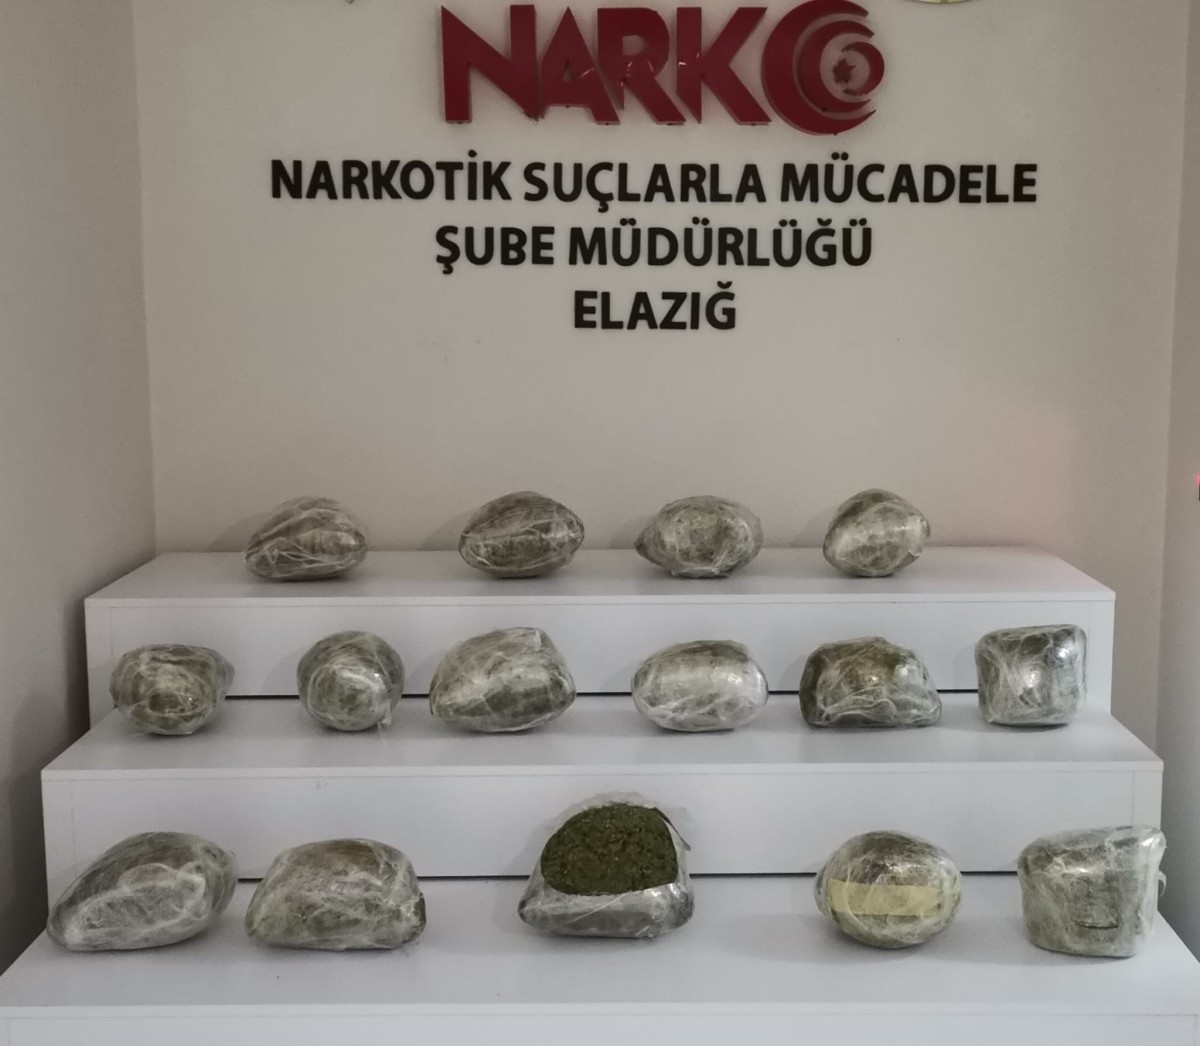 Elazığ'da 17 kilo 650 gram uyuşturucu ele geçirildi